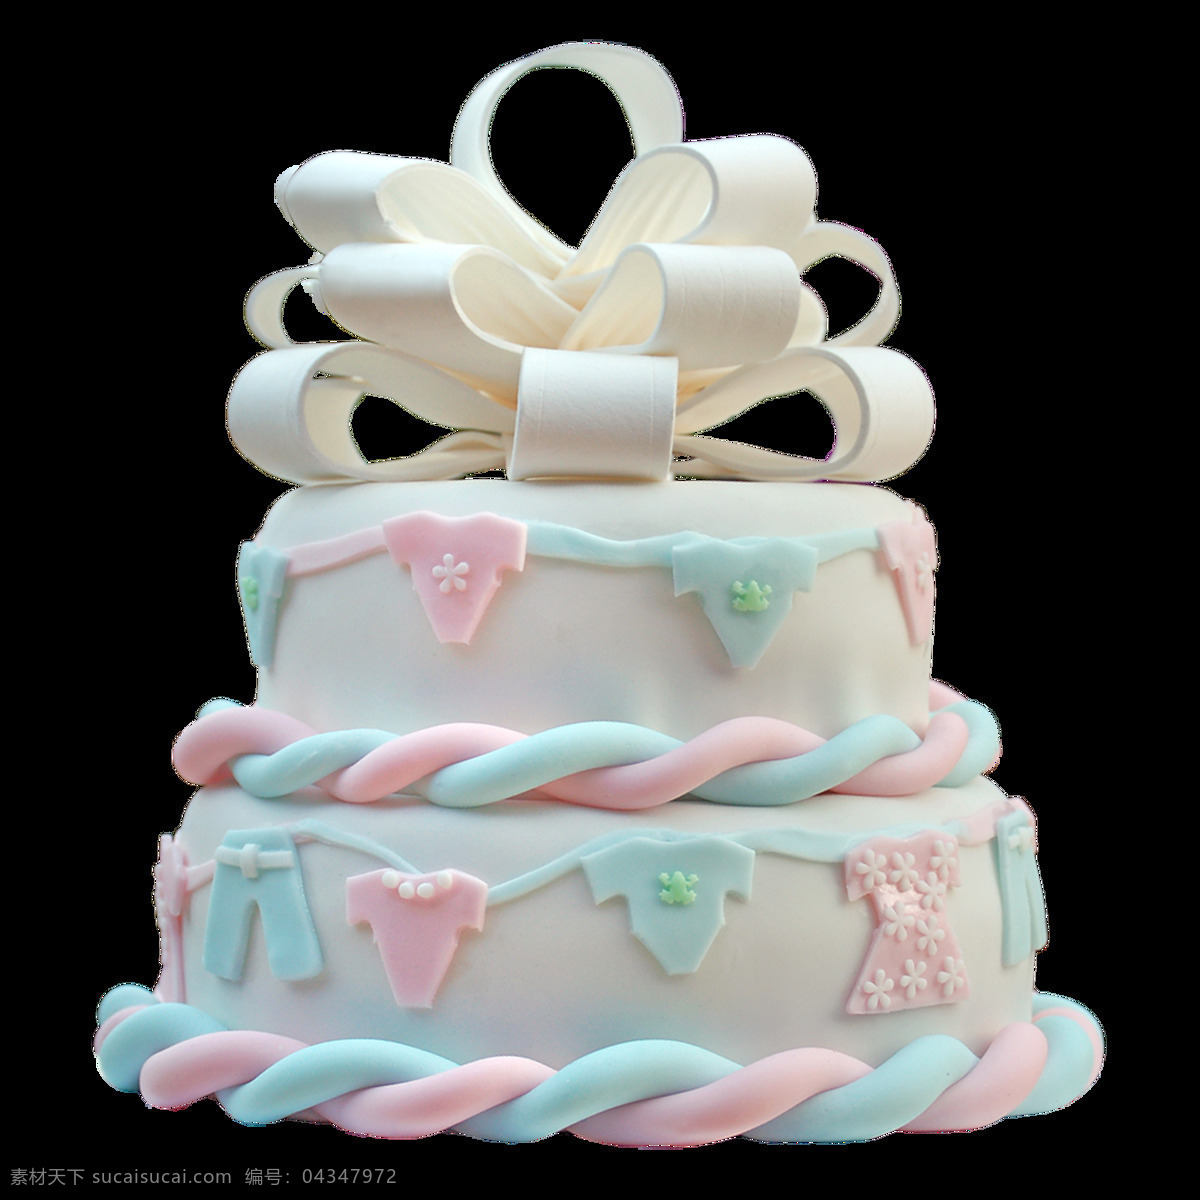 双层 彩色 蛋糕 免 抠 透明 图 层 世界 上 最 漂亮 创意 生日蛋糕 大全 女神生日蛋糕 蛋糕图片 生日蛋糕图片 糕点图片 婚礼蛋糕 巧克力蛋糕 水果蛋糕 奶油蛋糕